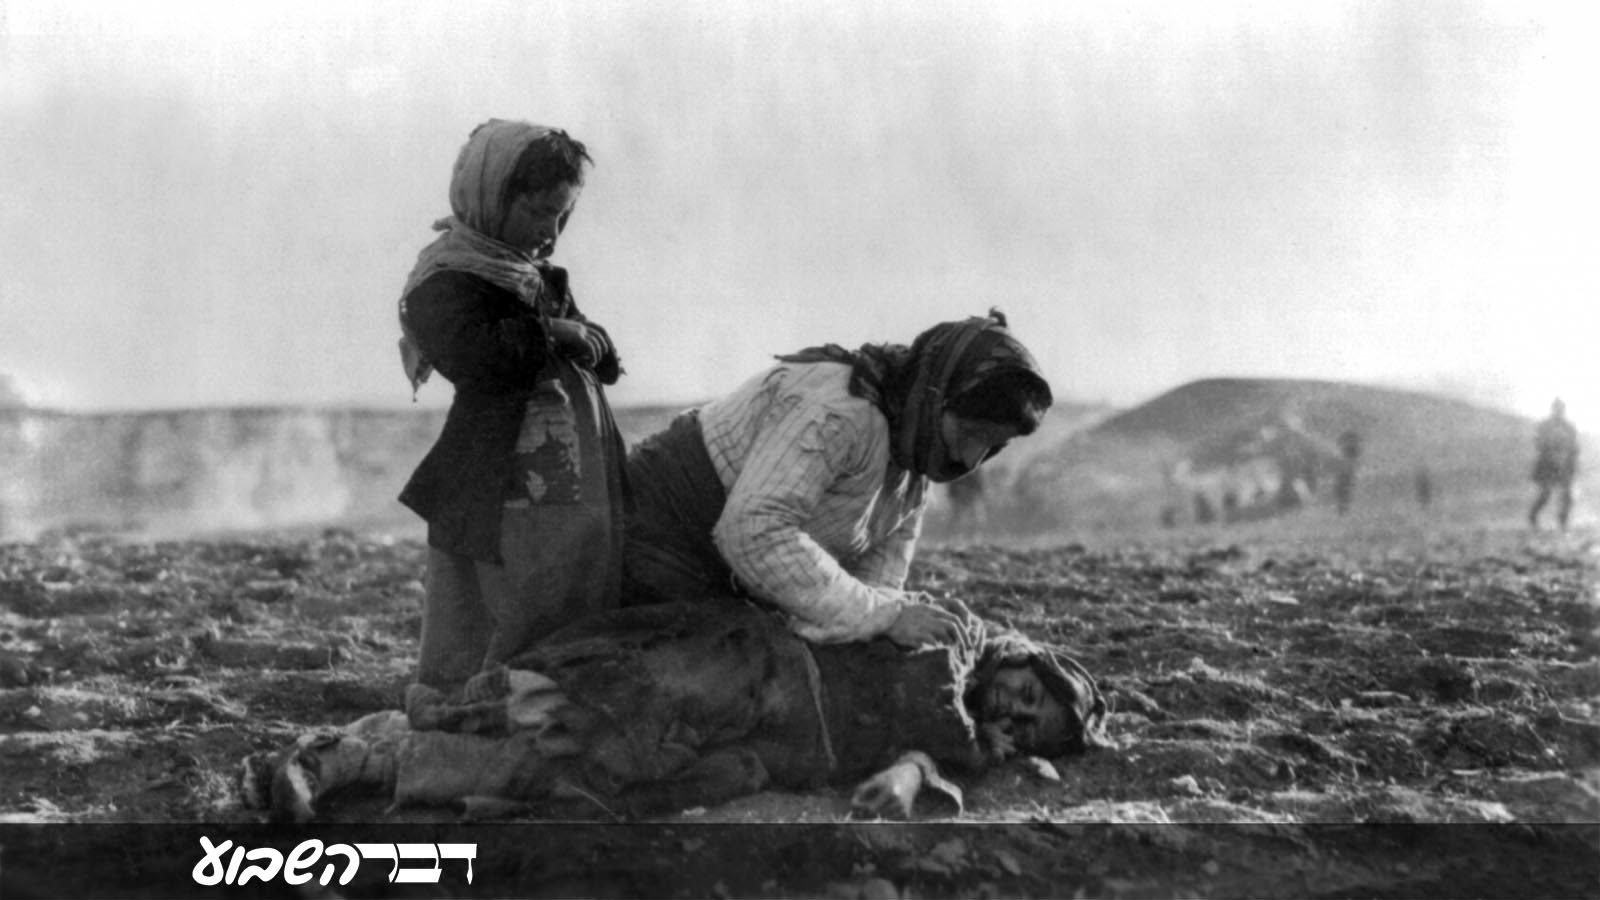 אשה ארמנית כורעת ליד ילד מת בשדה 1915-1919  צילום: מתוך ויקיפדיה